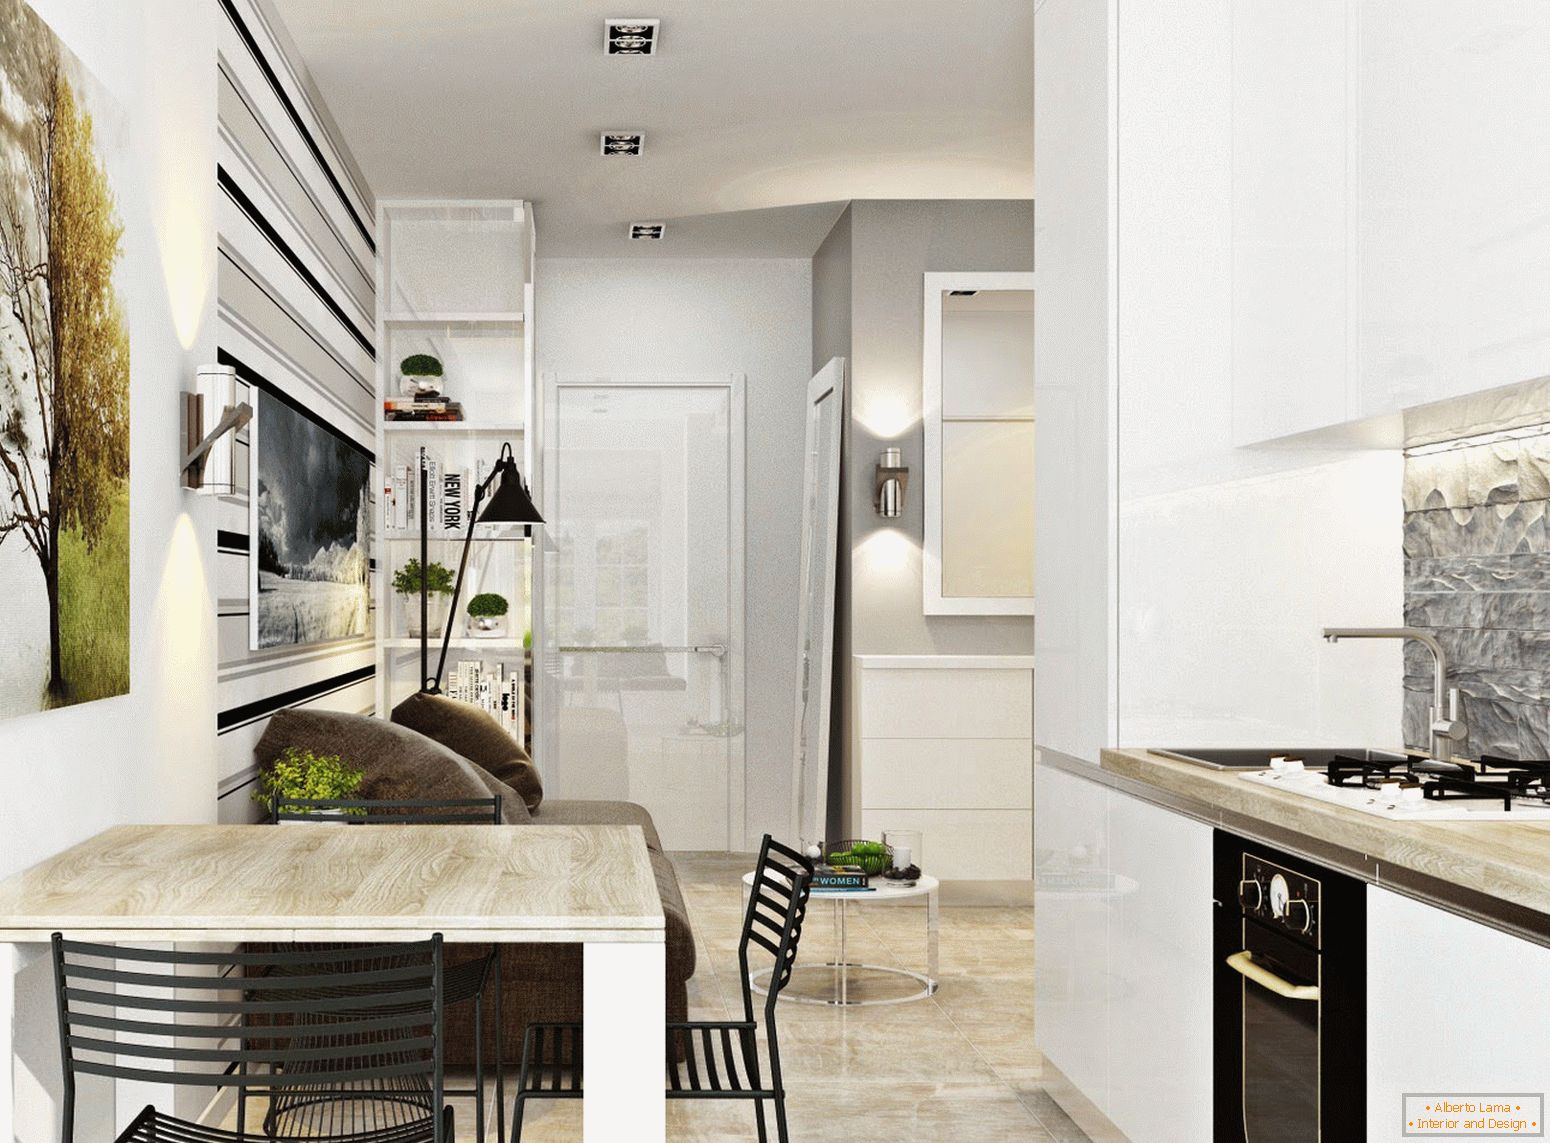 Intérieur de la cuisine et de la salle à manger dans le style du minimalisme blanc